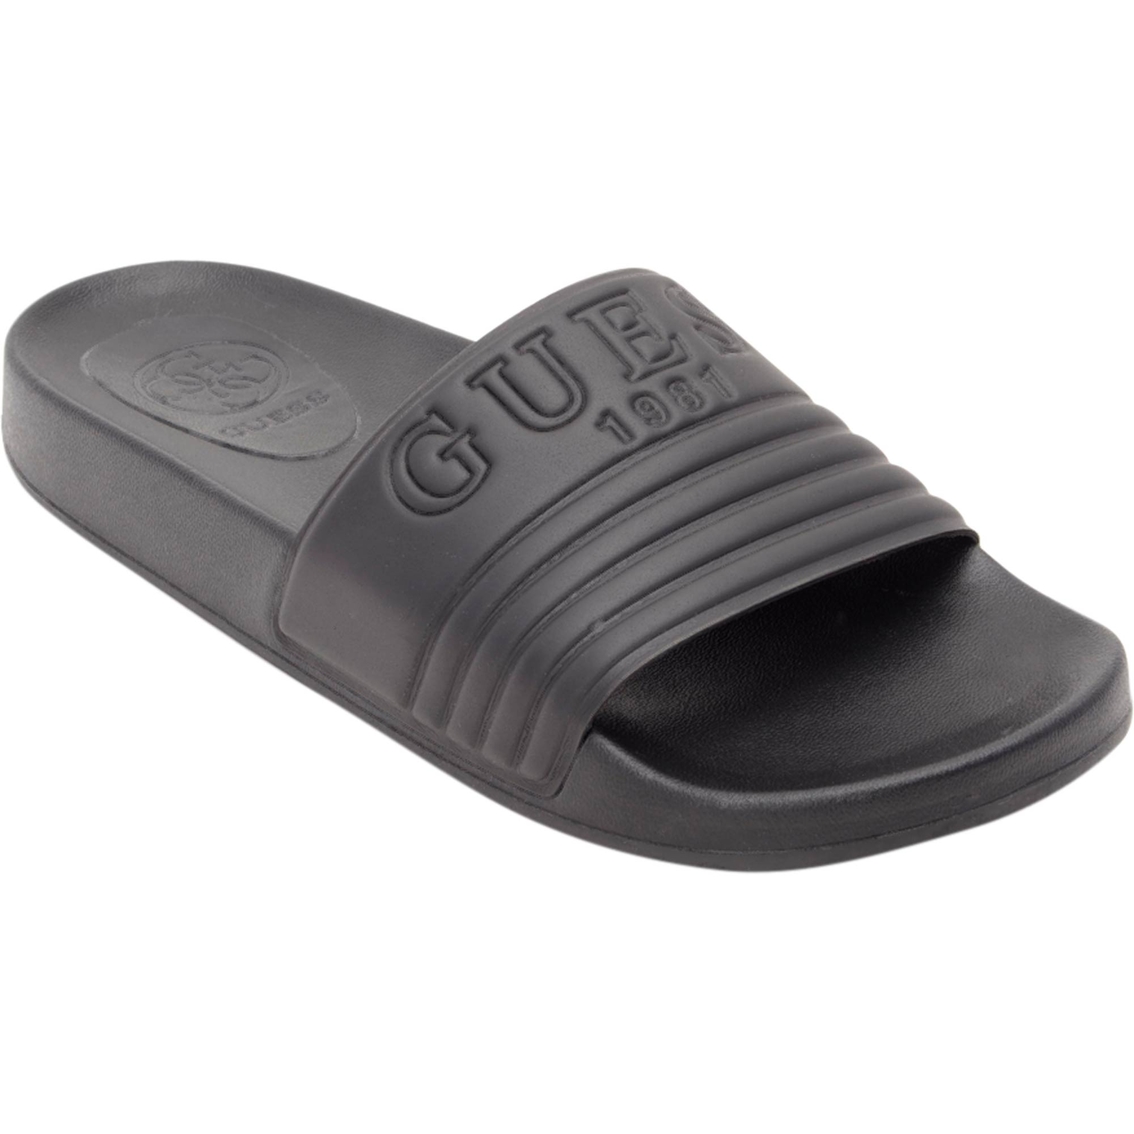 guess women's slide sandals